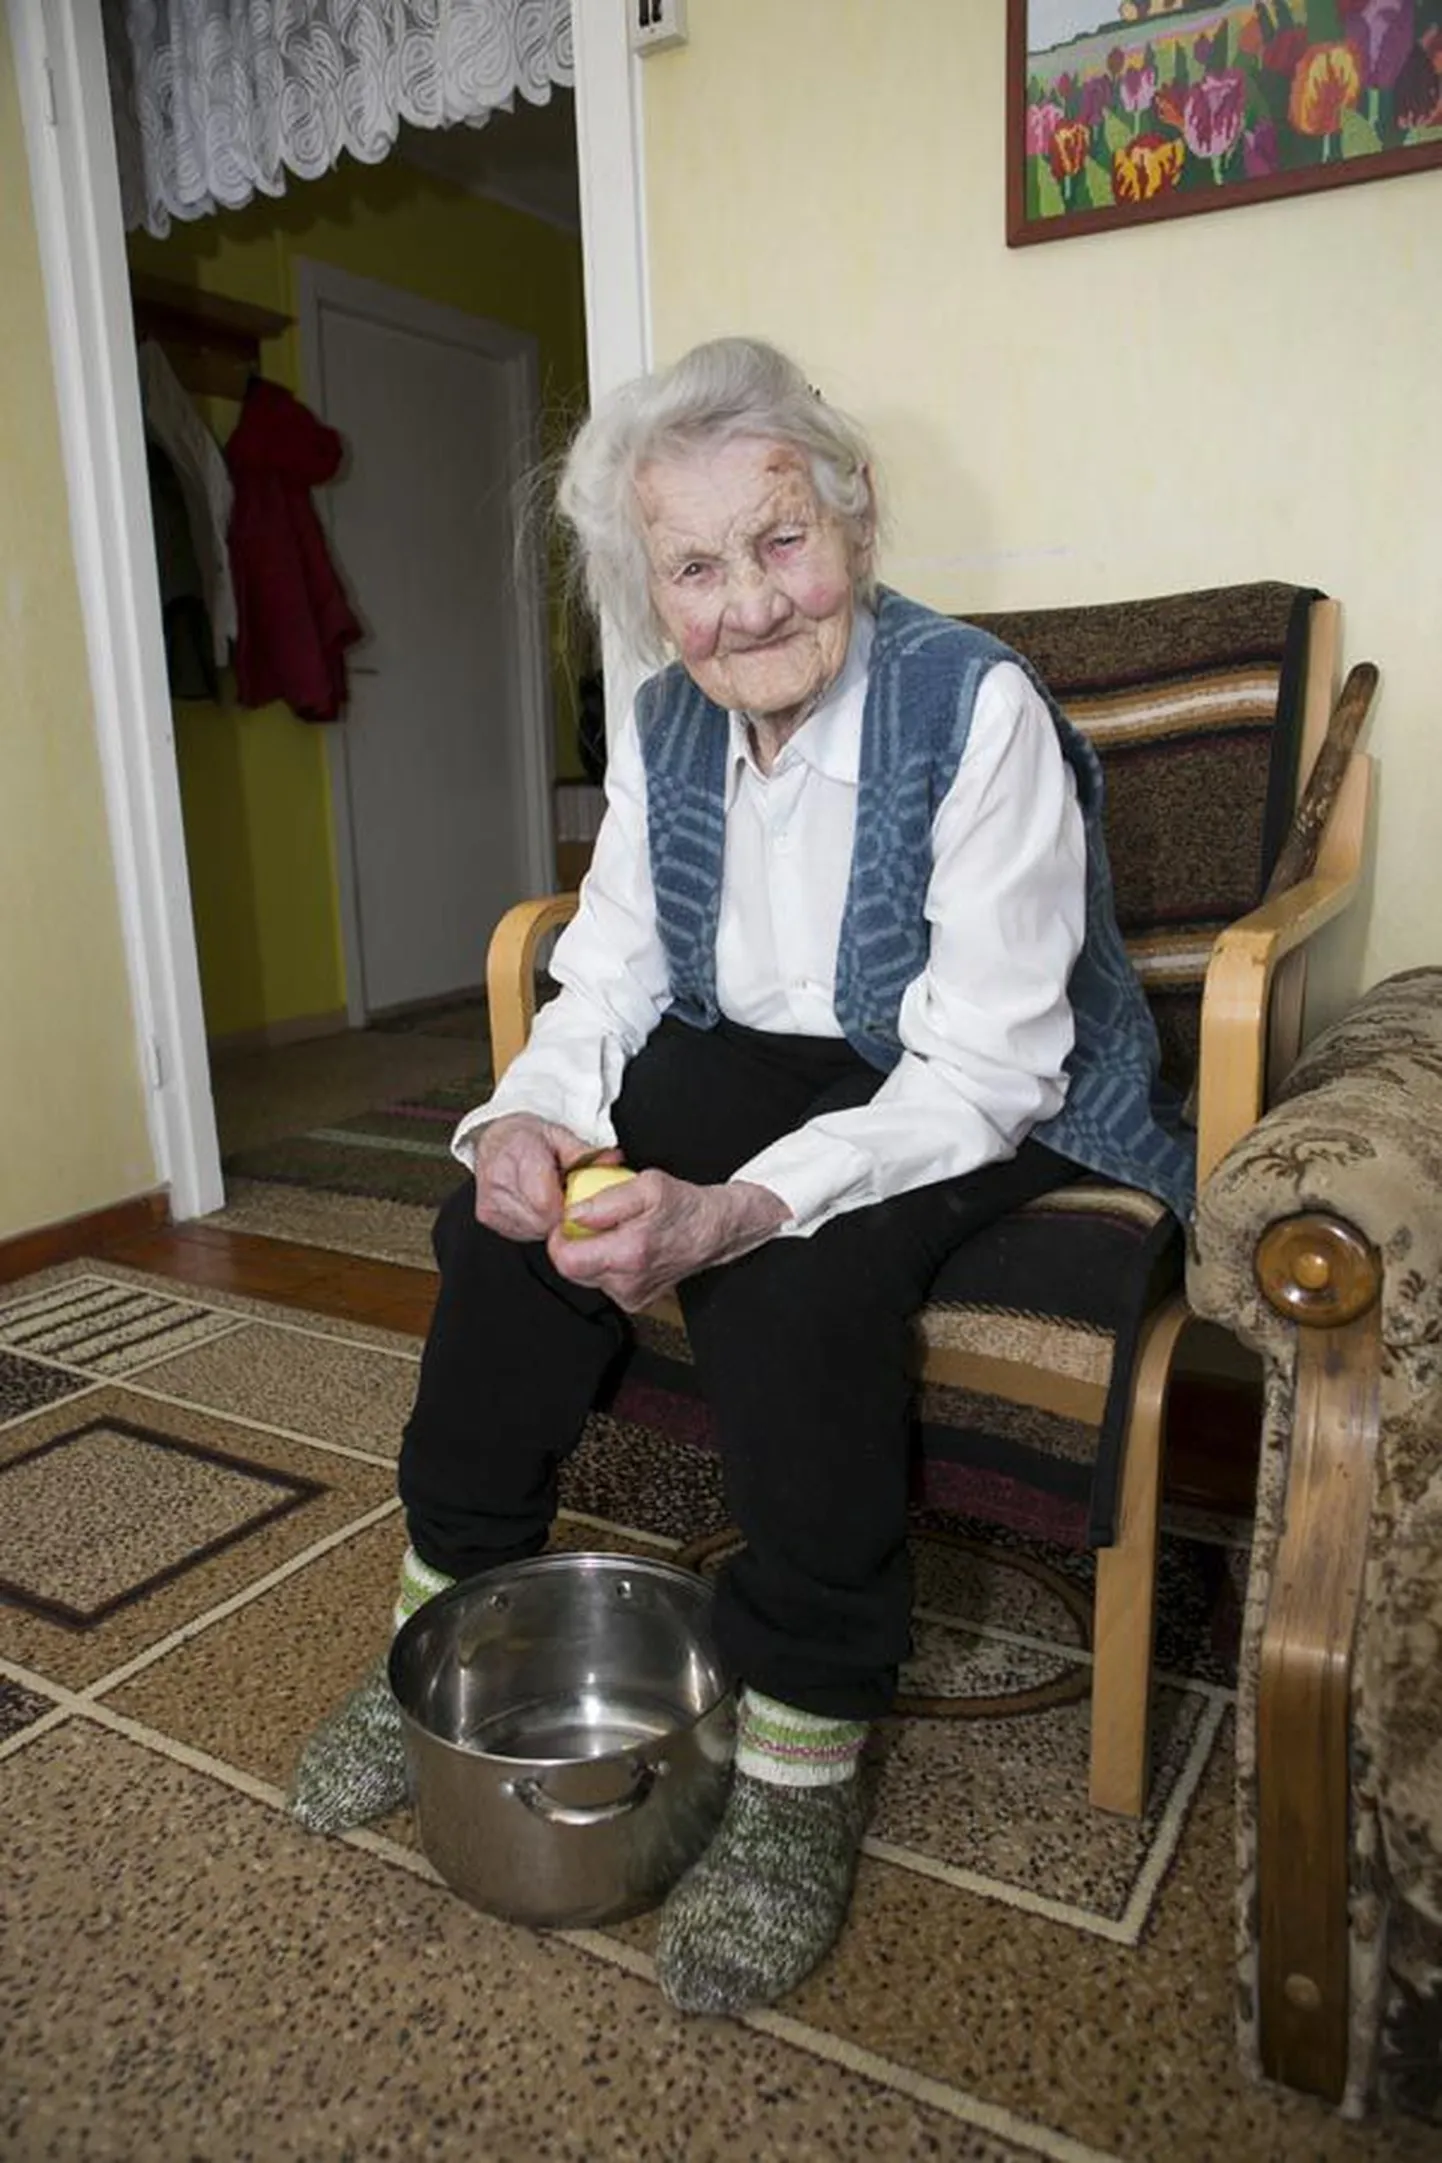 Täna oma 101. sünnipäeva pidaval Selma Varblasel jätkub töötahet. Nii koorib ta näiteks kogu perele kartuleid. Kui Sakala fotograaf palus tal selle töö pildile jäädvustamiseks ette võtta, reetis muidu tasase vanaproua huumorimeelt muie, mis ta huulile saabus.